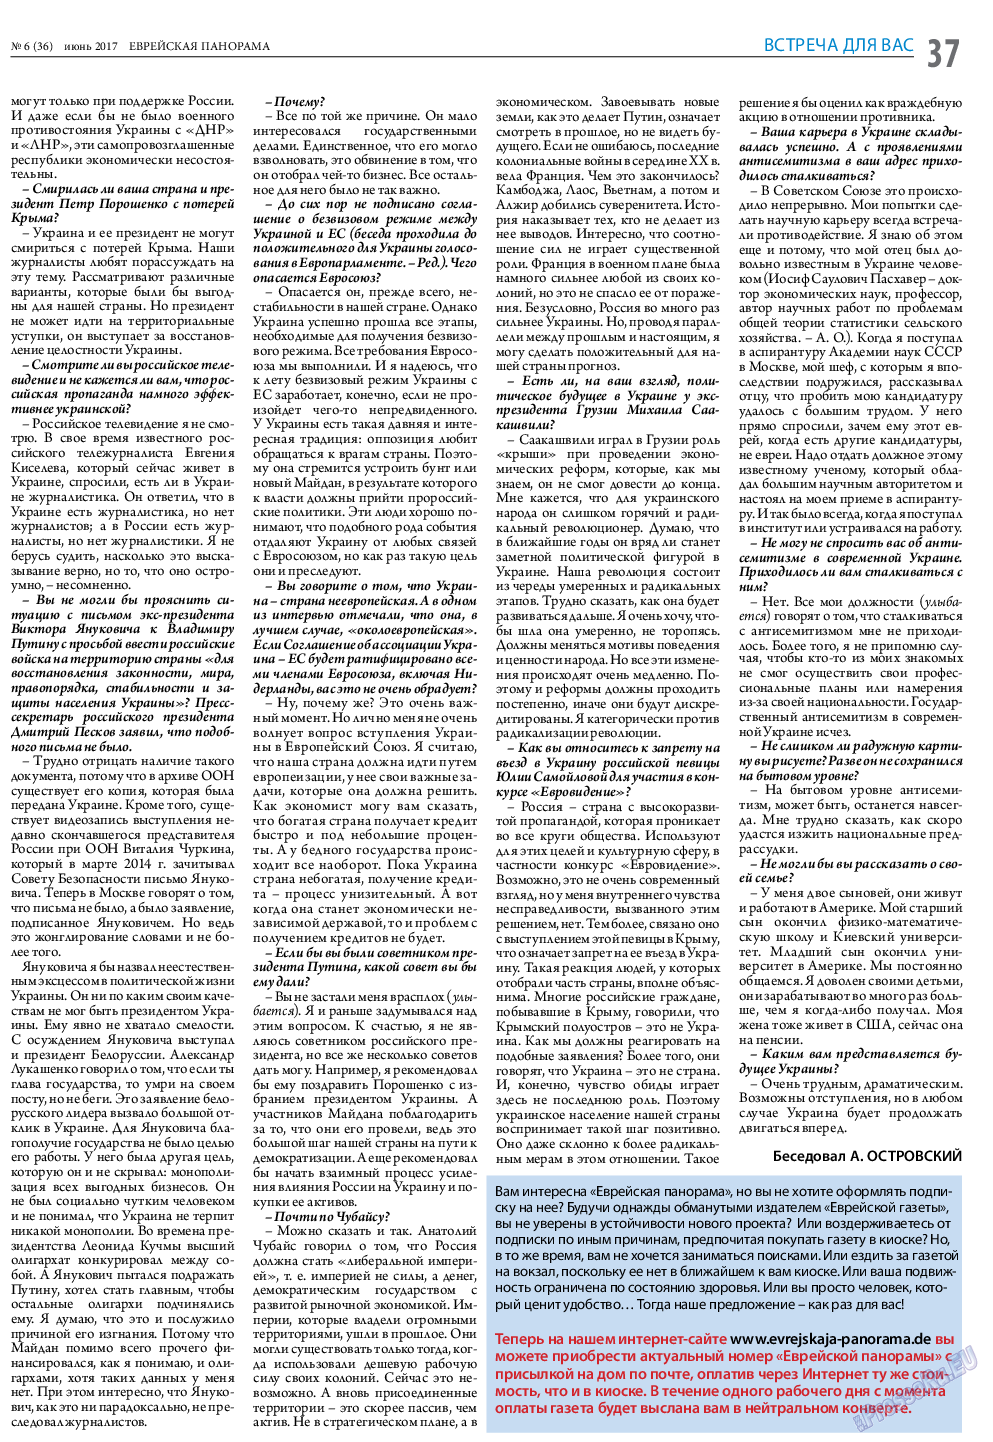 Еврейская панорама (газета). 2017 год, номер 6, стр. 37